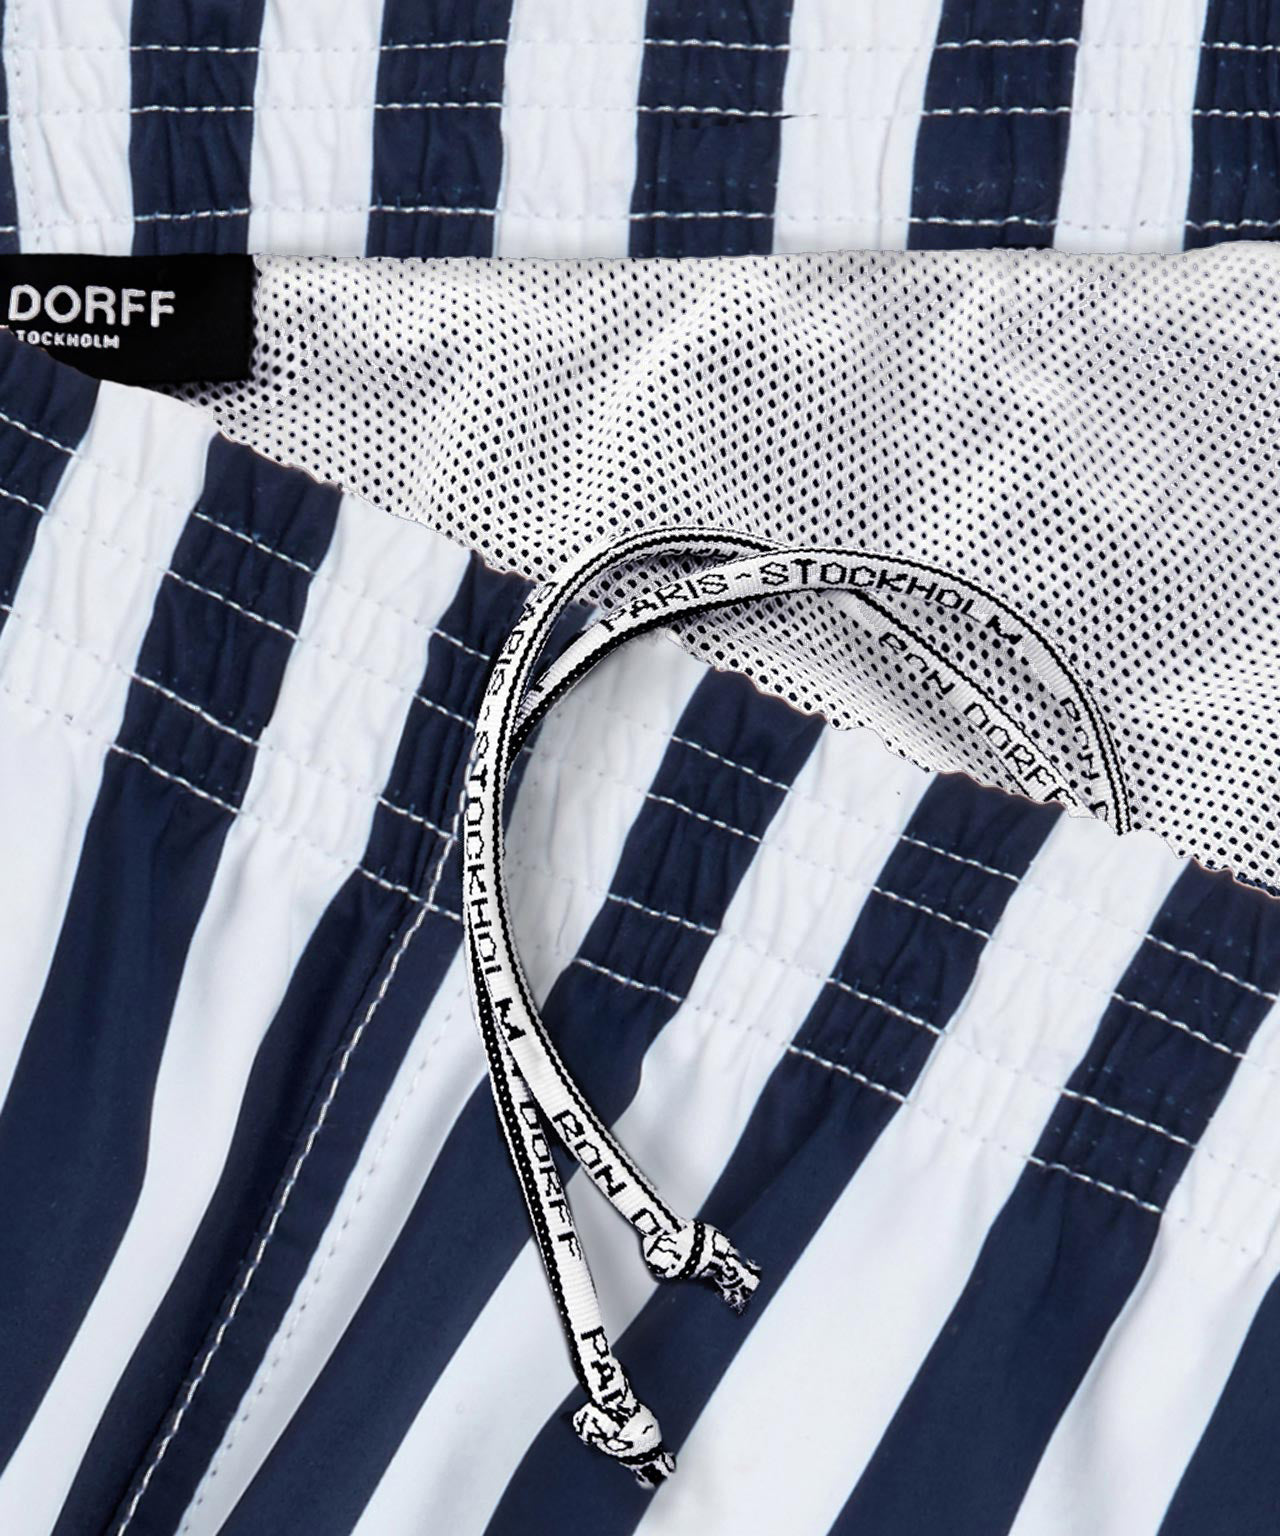 Swim Shorts Vertical Stripes: Navy/White